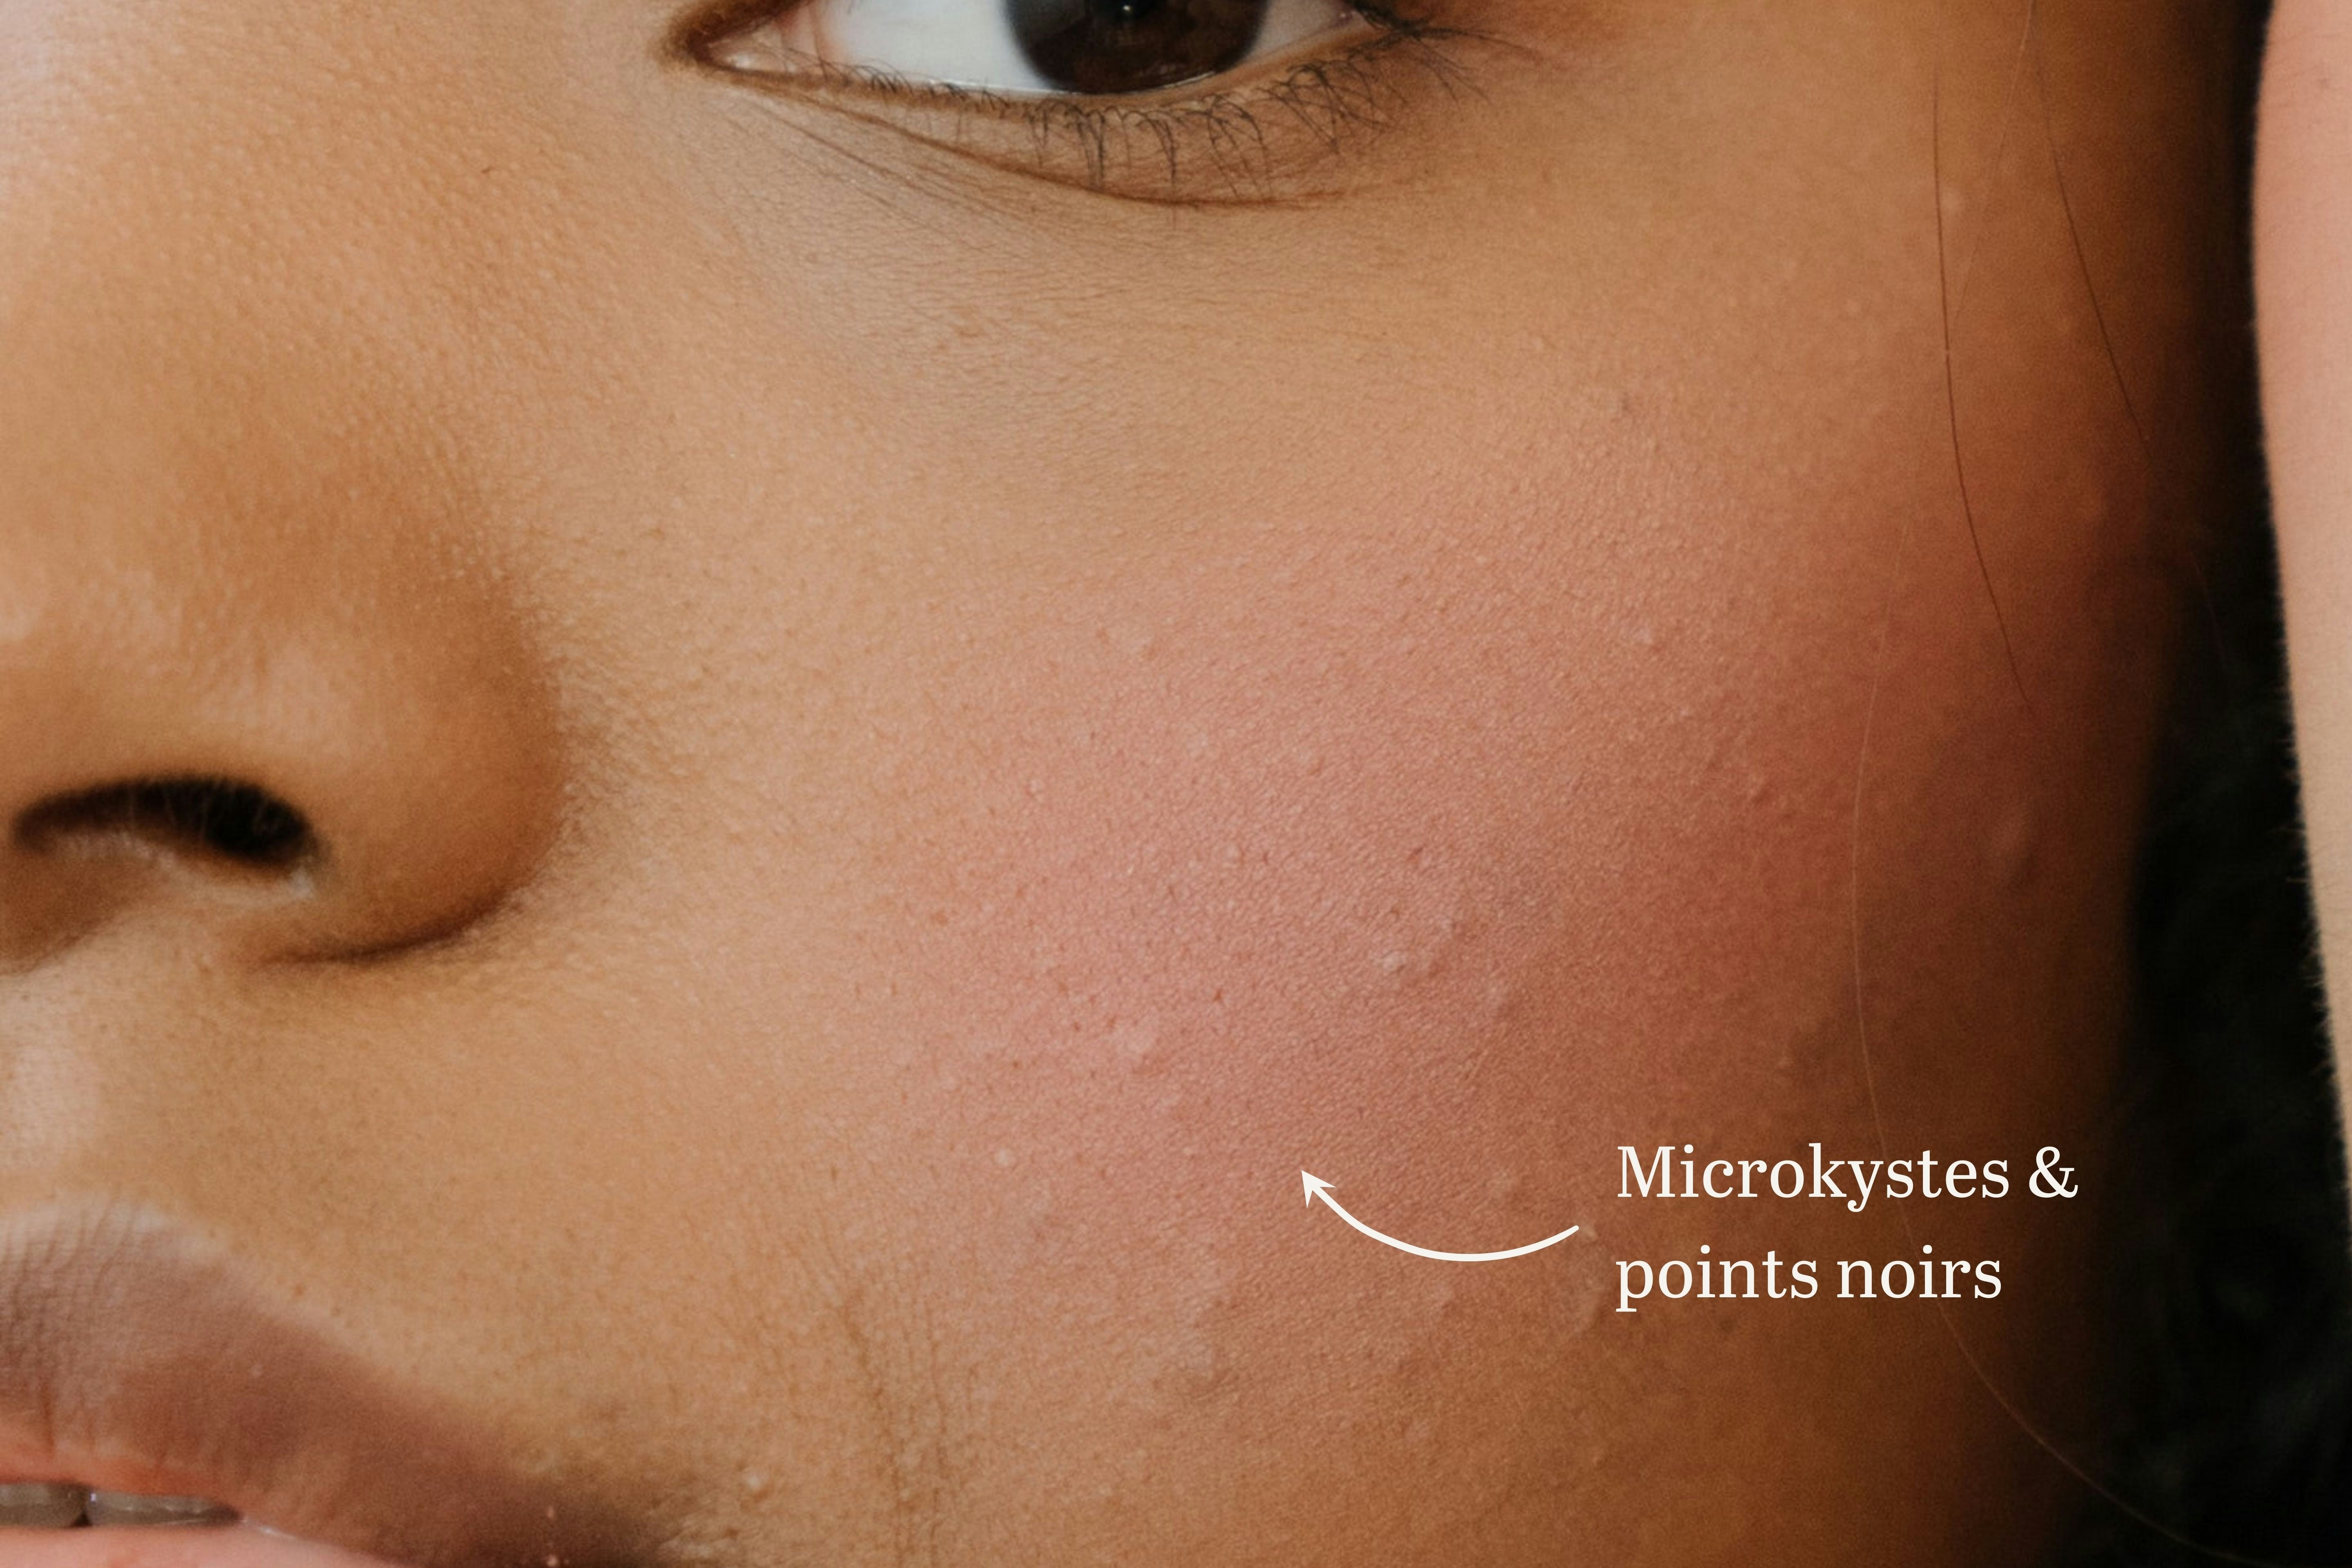 Comment reconnaître et lutter contre l'acné hormonale ? | Laboté